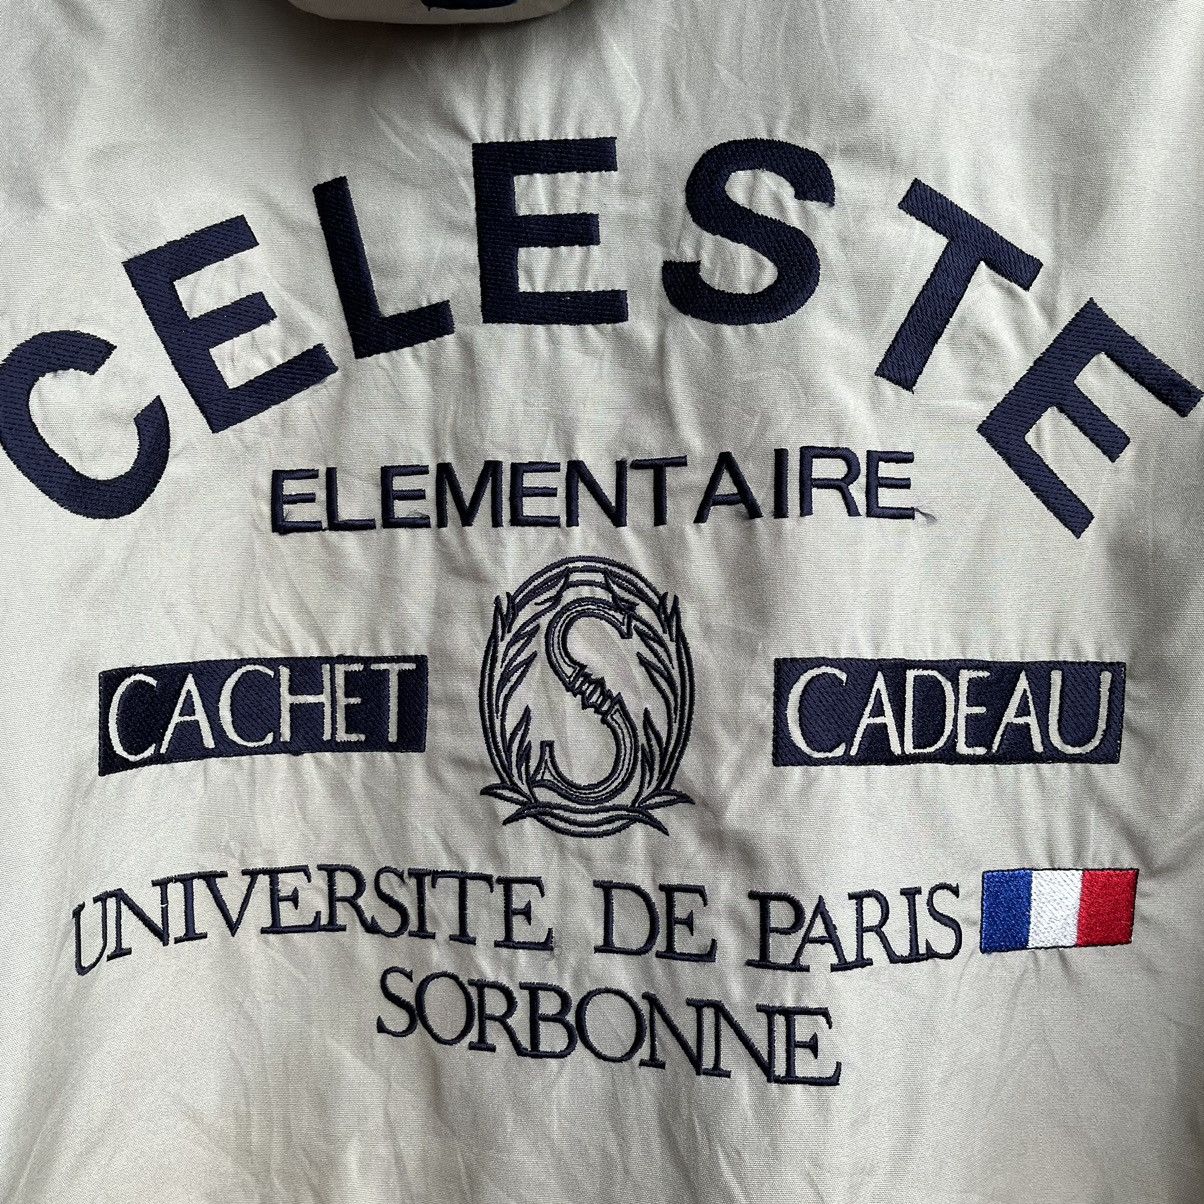 Vintage Celeste Universite De Paris Sorbonne Parka Jacket - 21